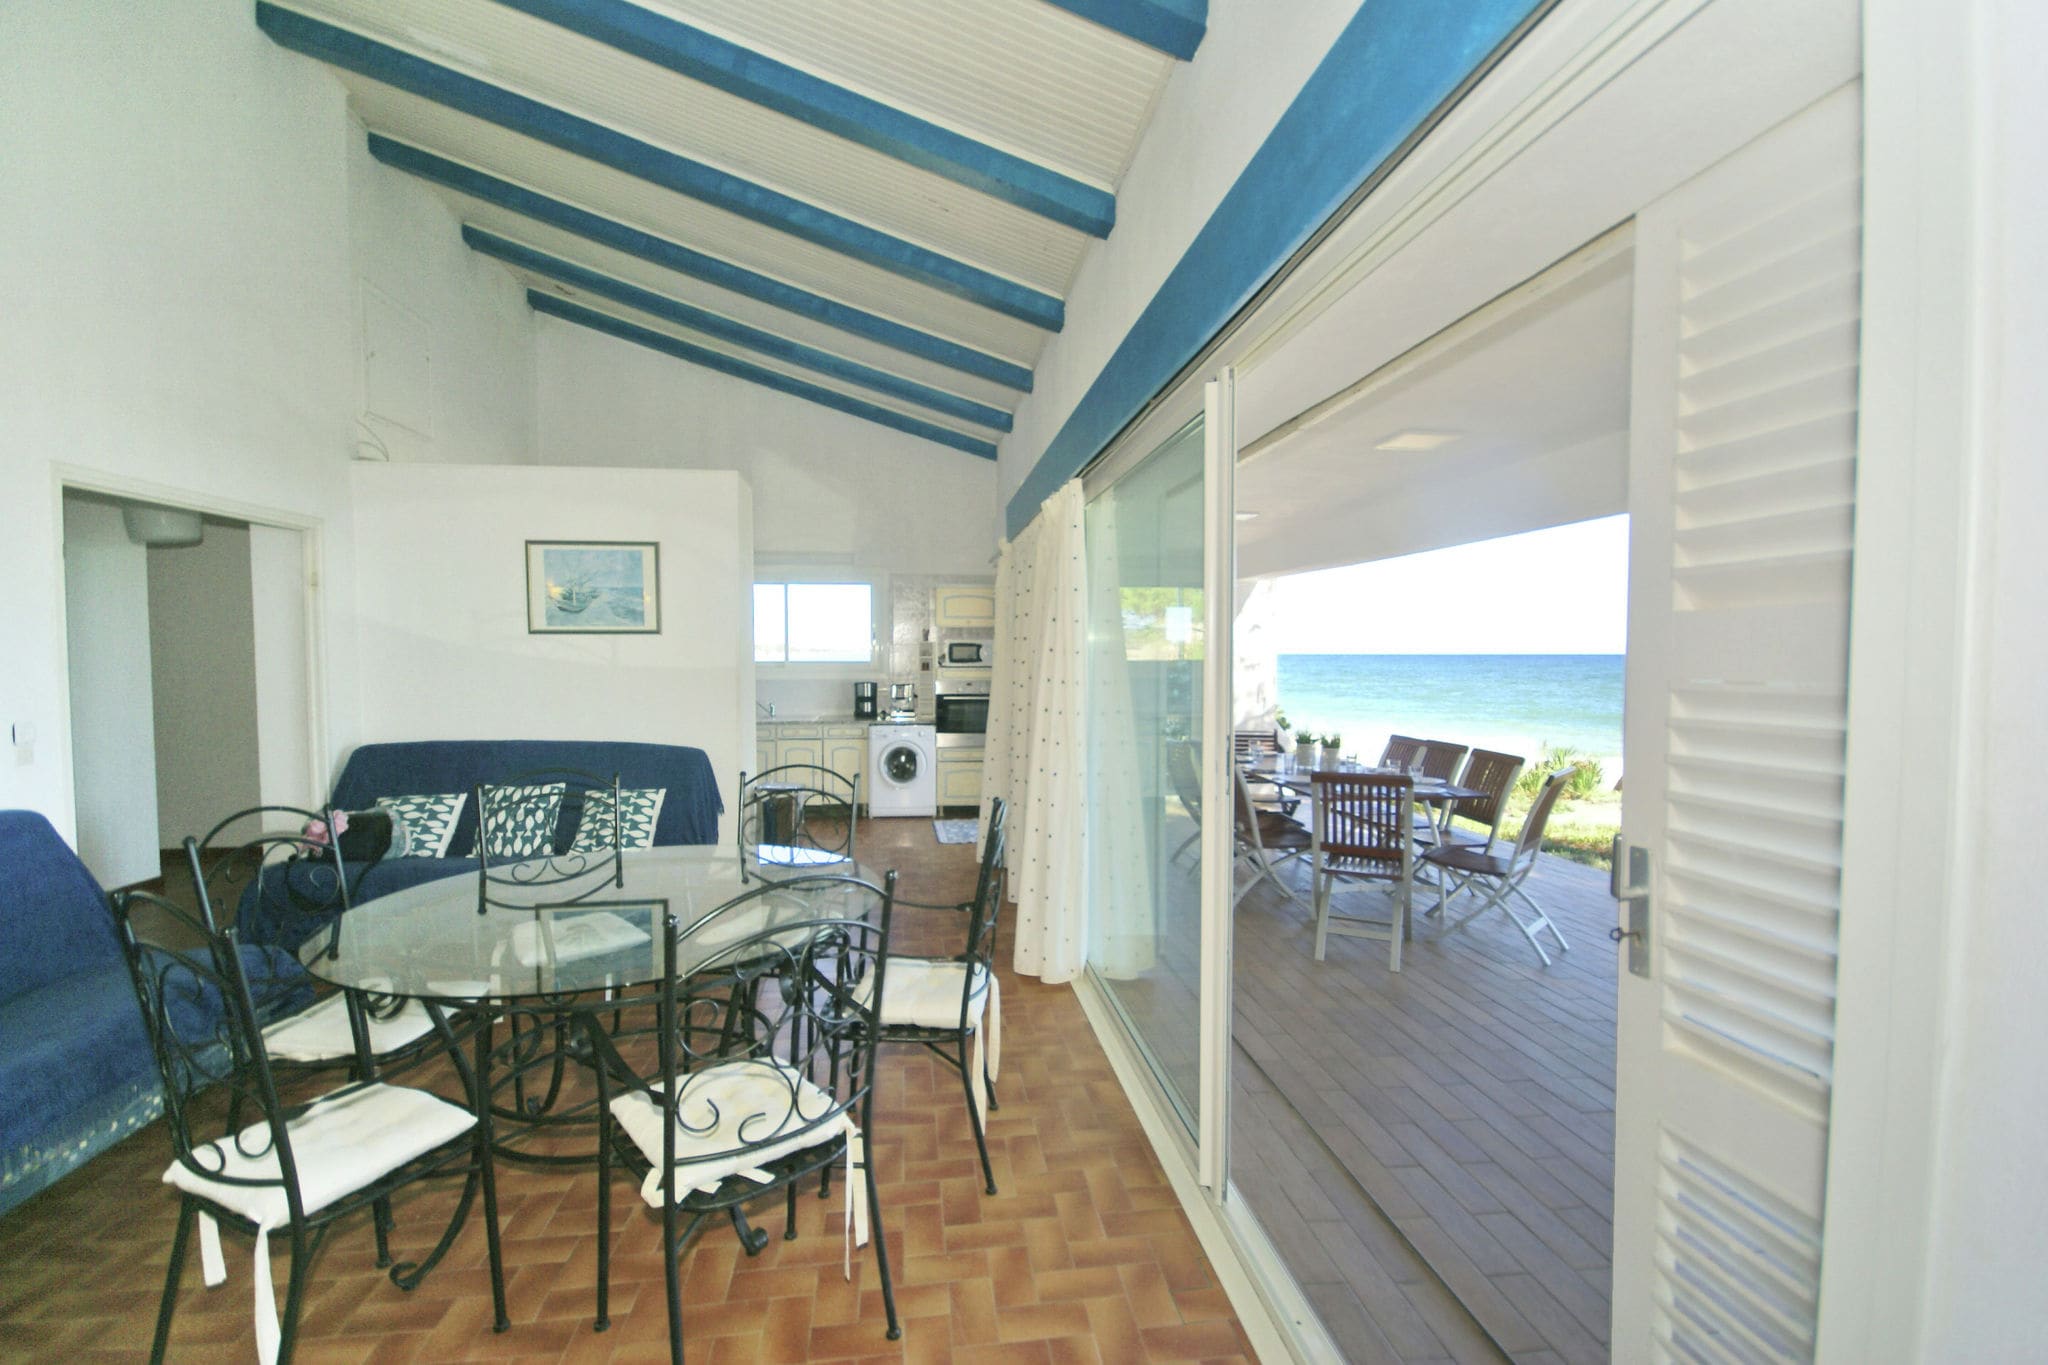 Ruime villa in San-Nicolao bij het strand van Corsica